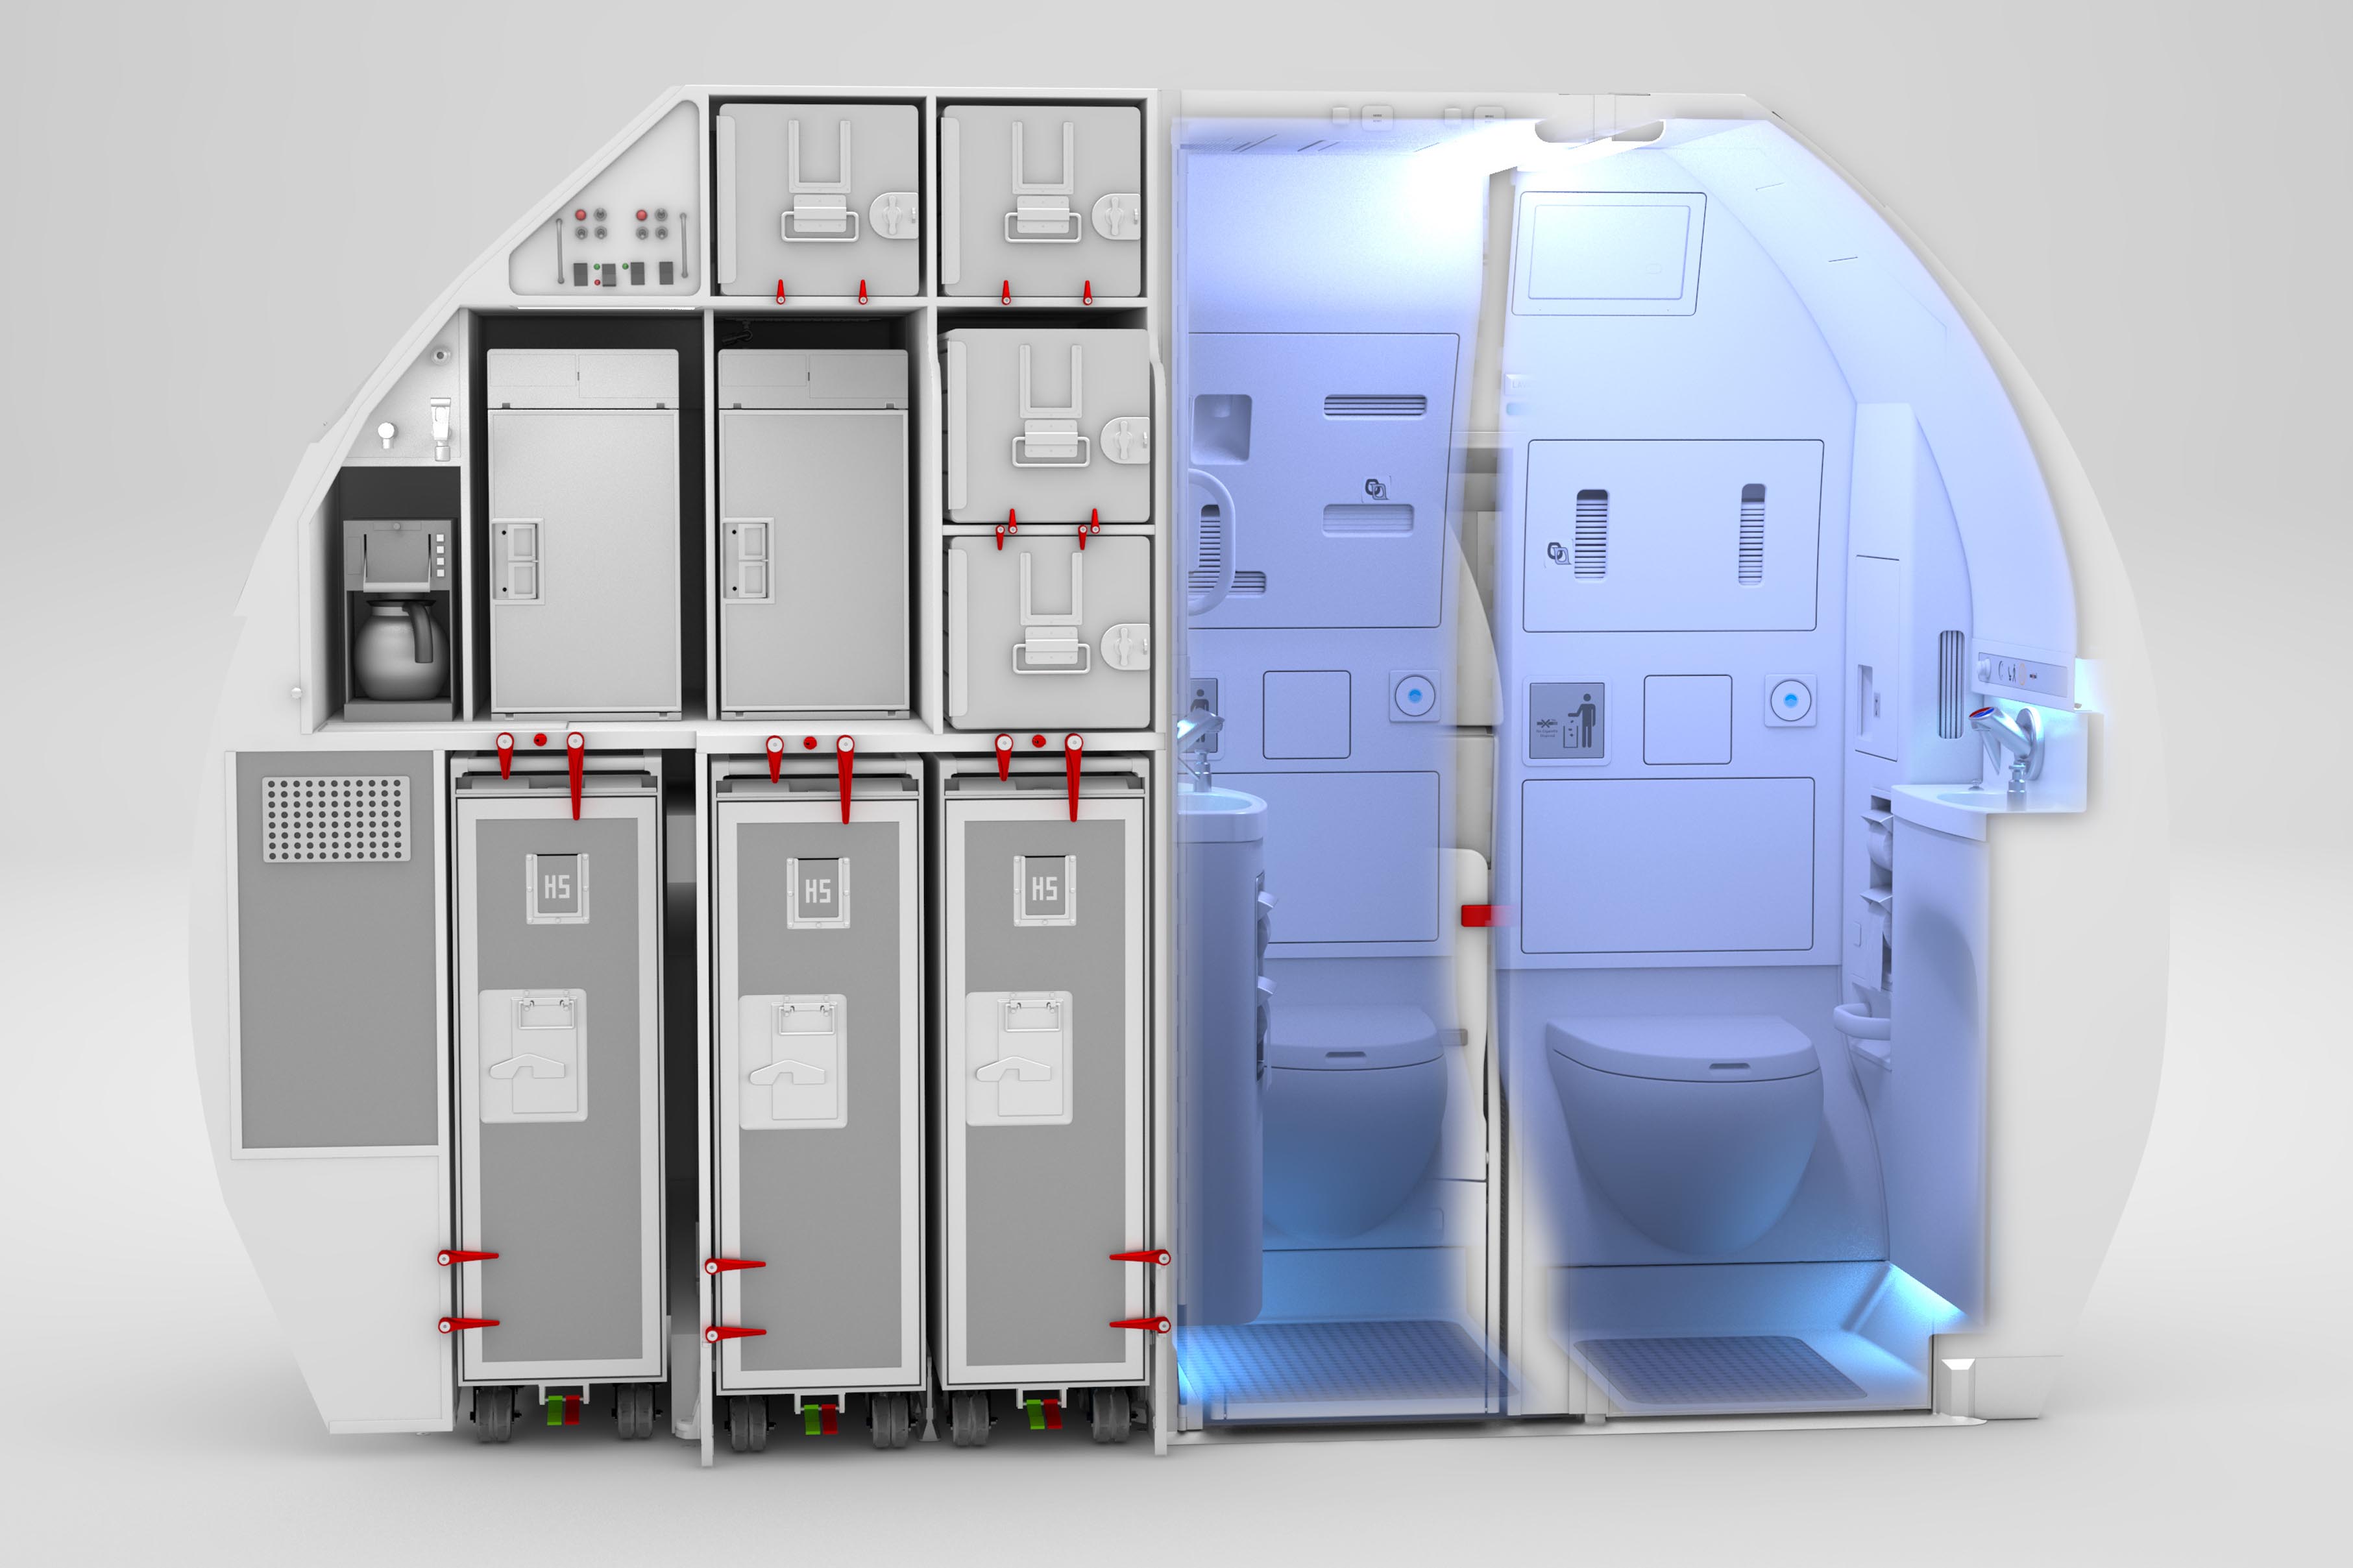 Airbus’ın “Space Flex” Adını Verdiği Yeni Kabin Tasarımı Beğenildi mi?